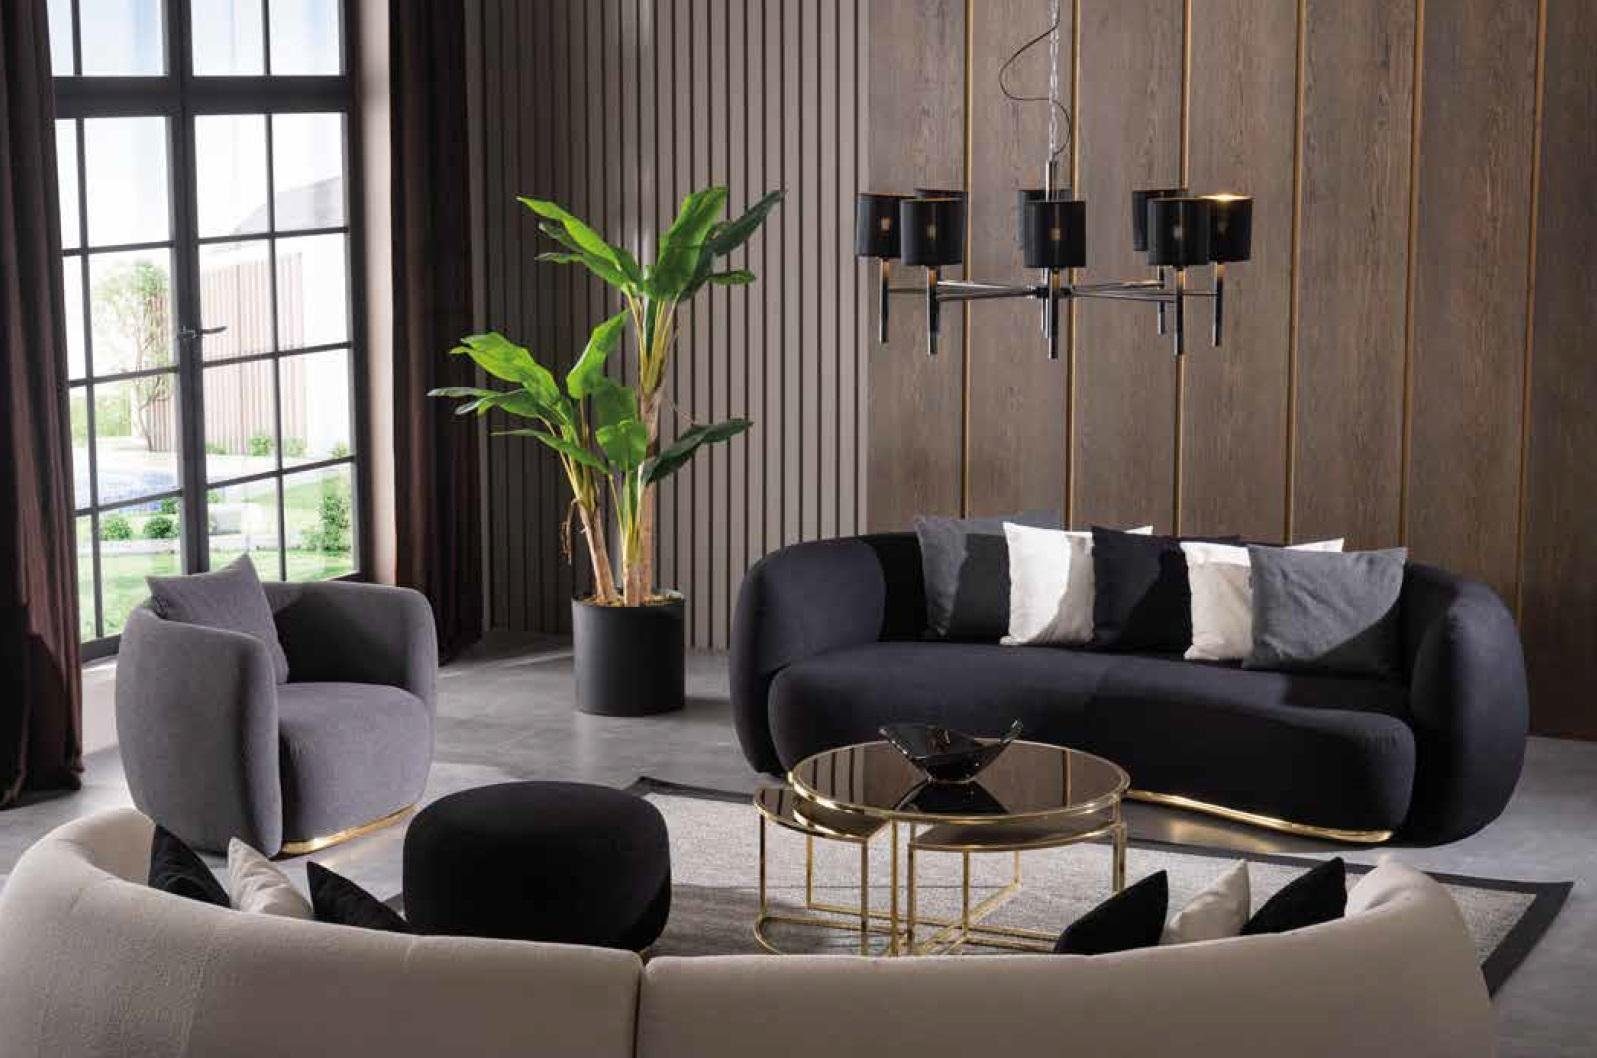 xxl Sofa beige in Neu, Europe Couch Luxus Polstermöbel Schwarz Made Ovale Viersitzer JVmoebel